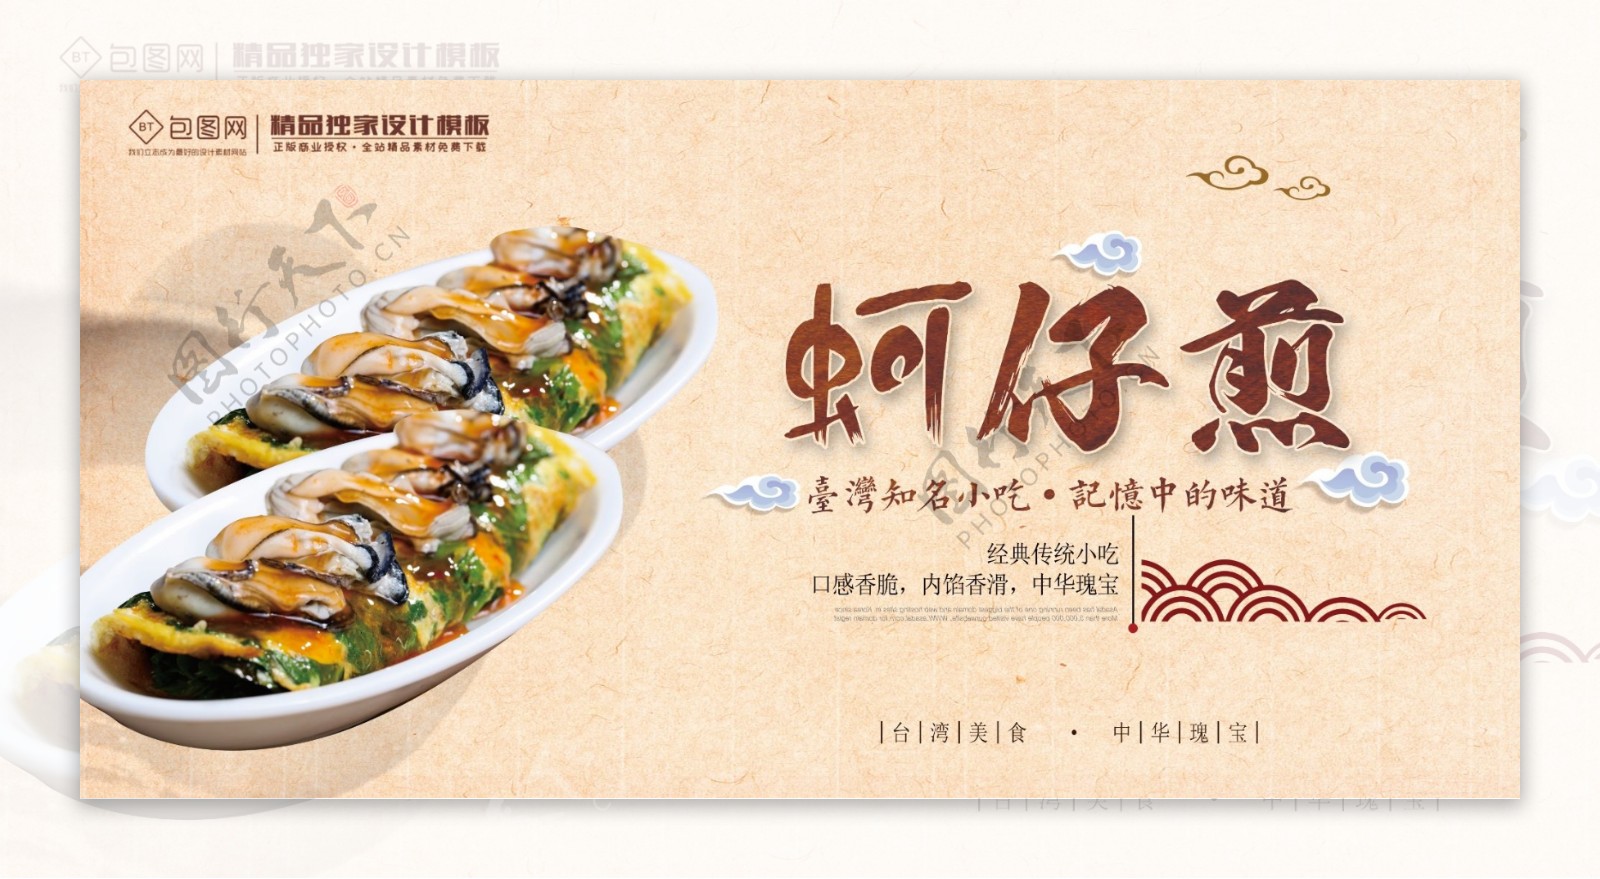 中国风美食蚵仔煎展板海报设计